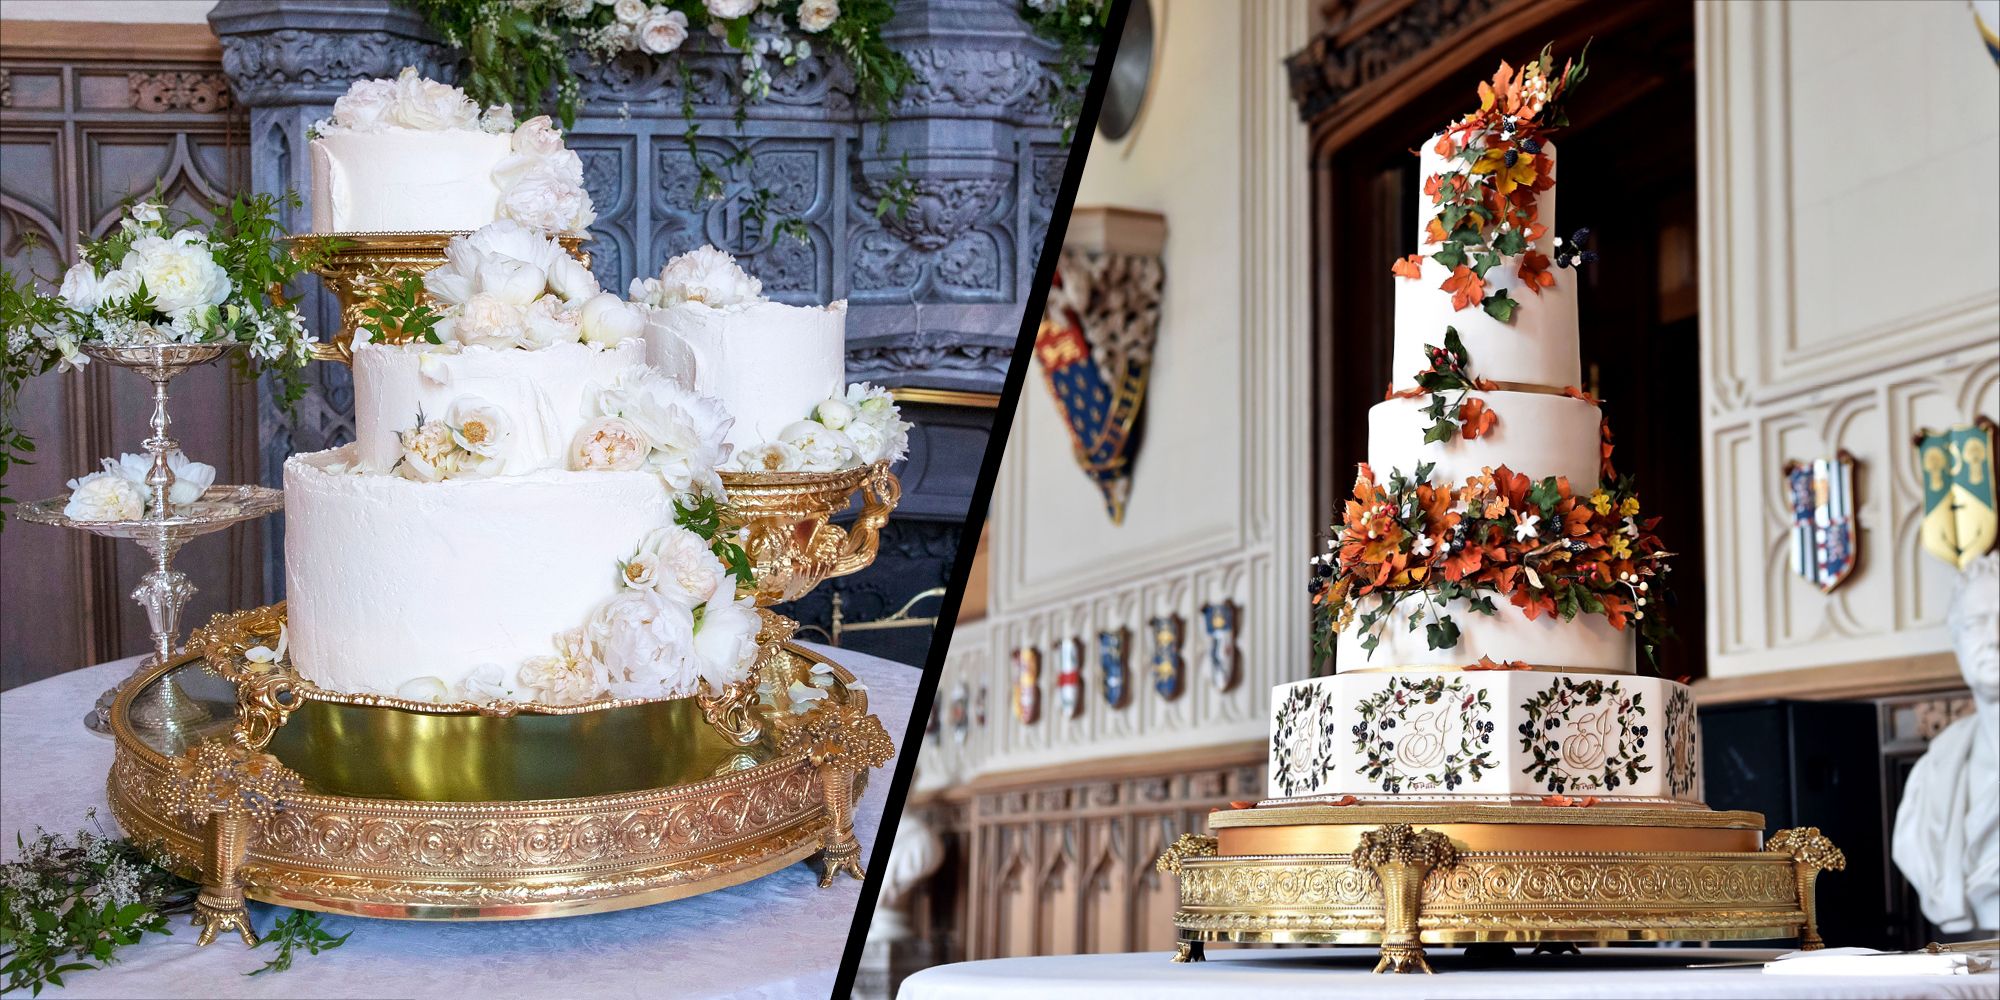 Semi naked Wedding cake Harry Potter style :) - Decorated - CakesDecor